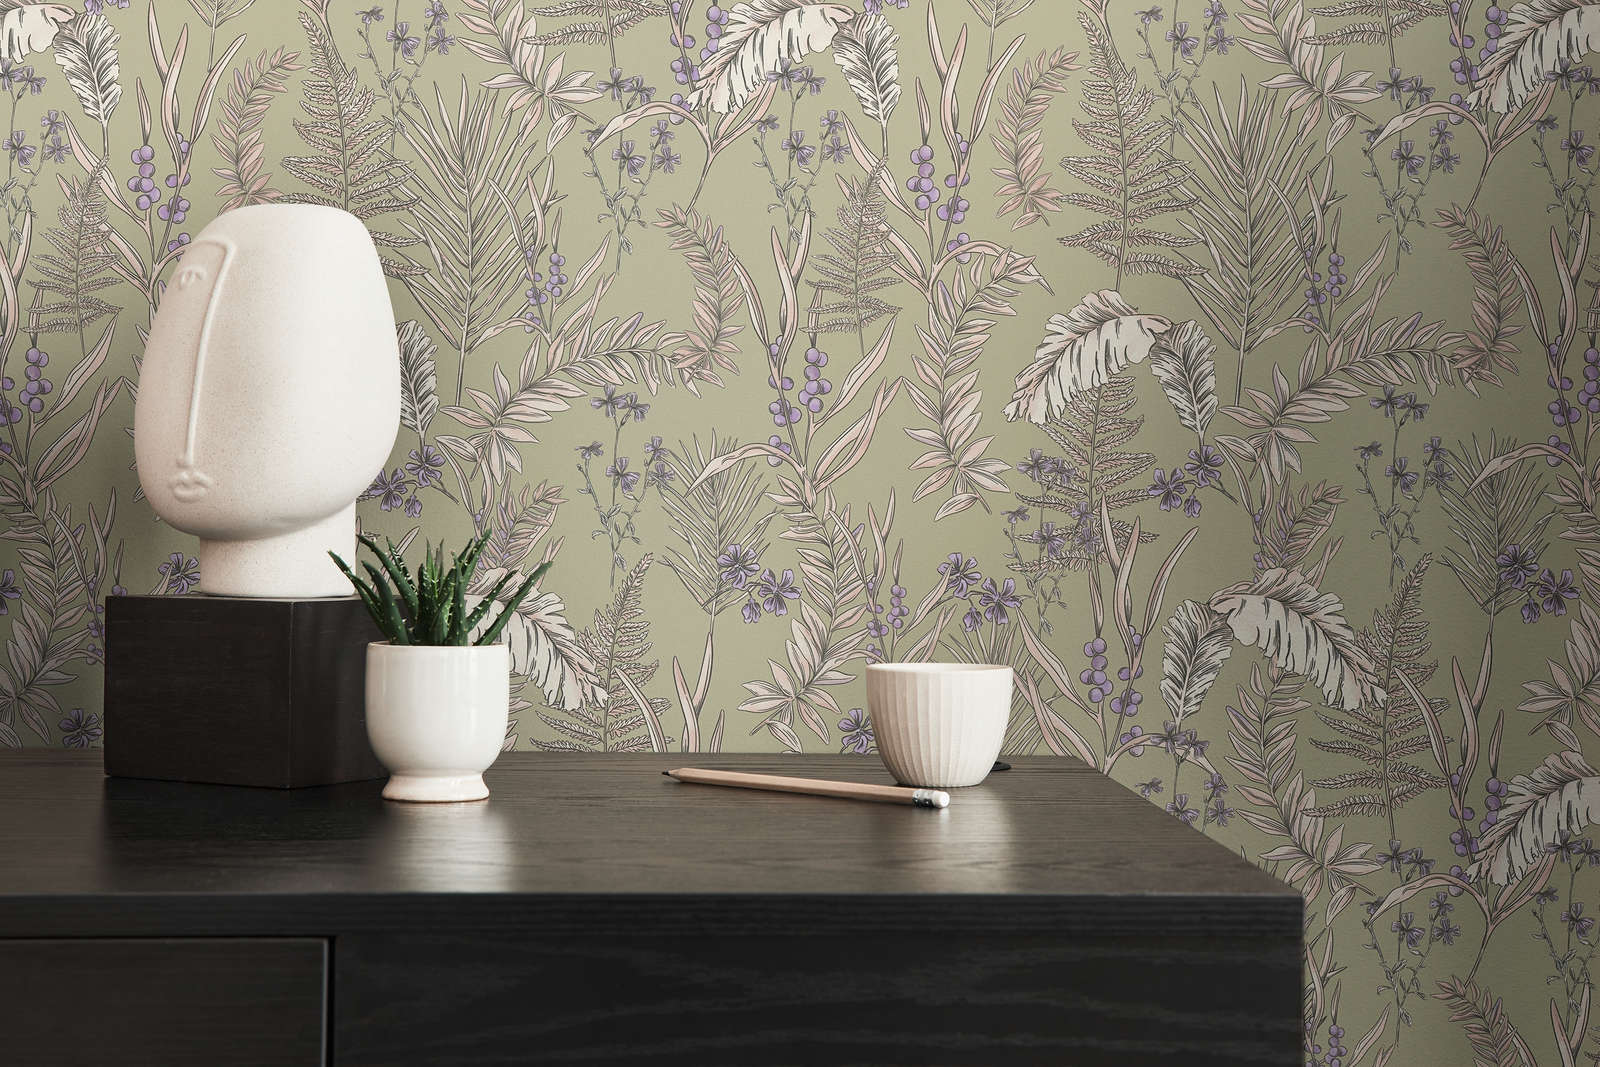             Moderne Tapete im floralen Stil mit Blättern & Blüten strukturiert – Grau, Creme, Lila
        